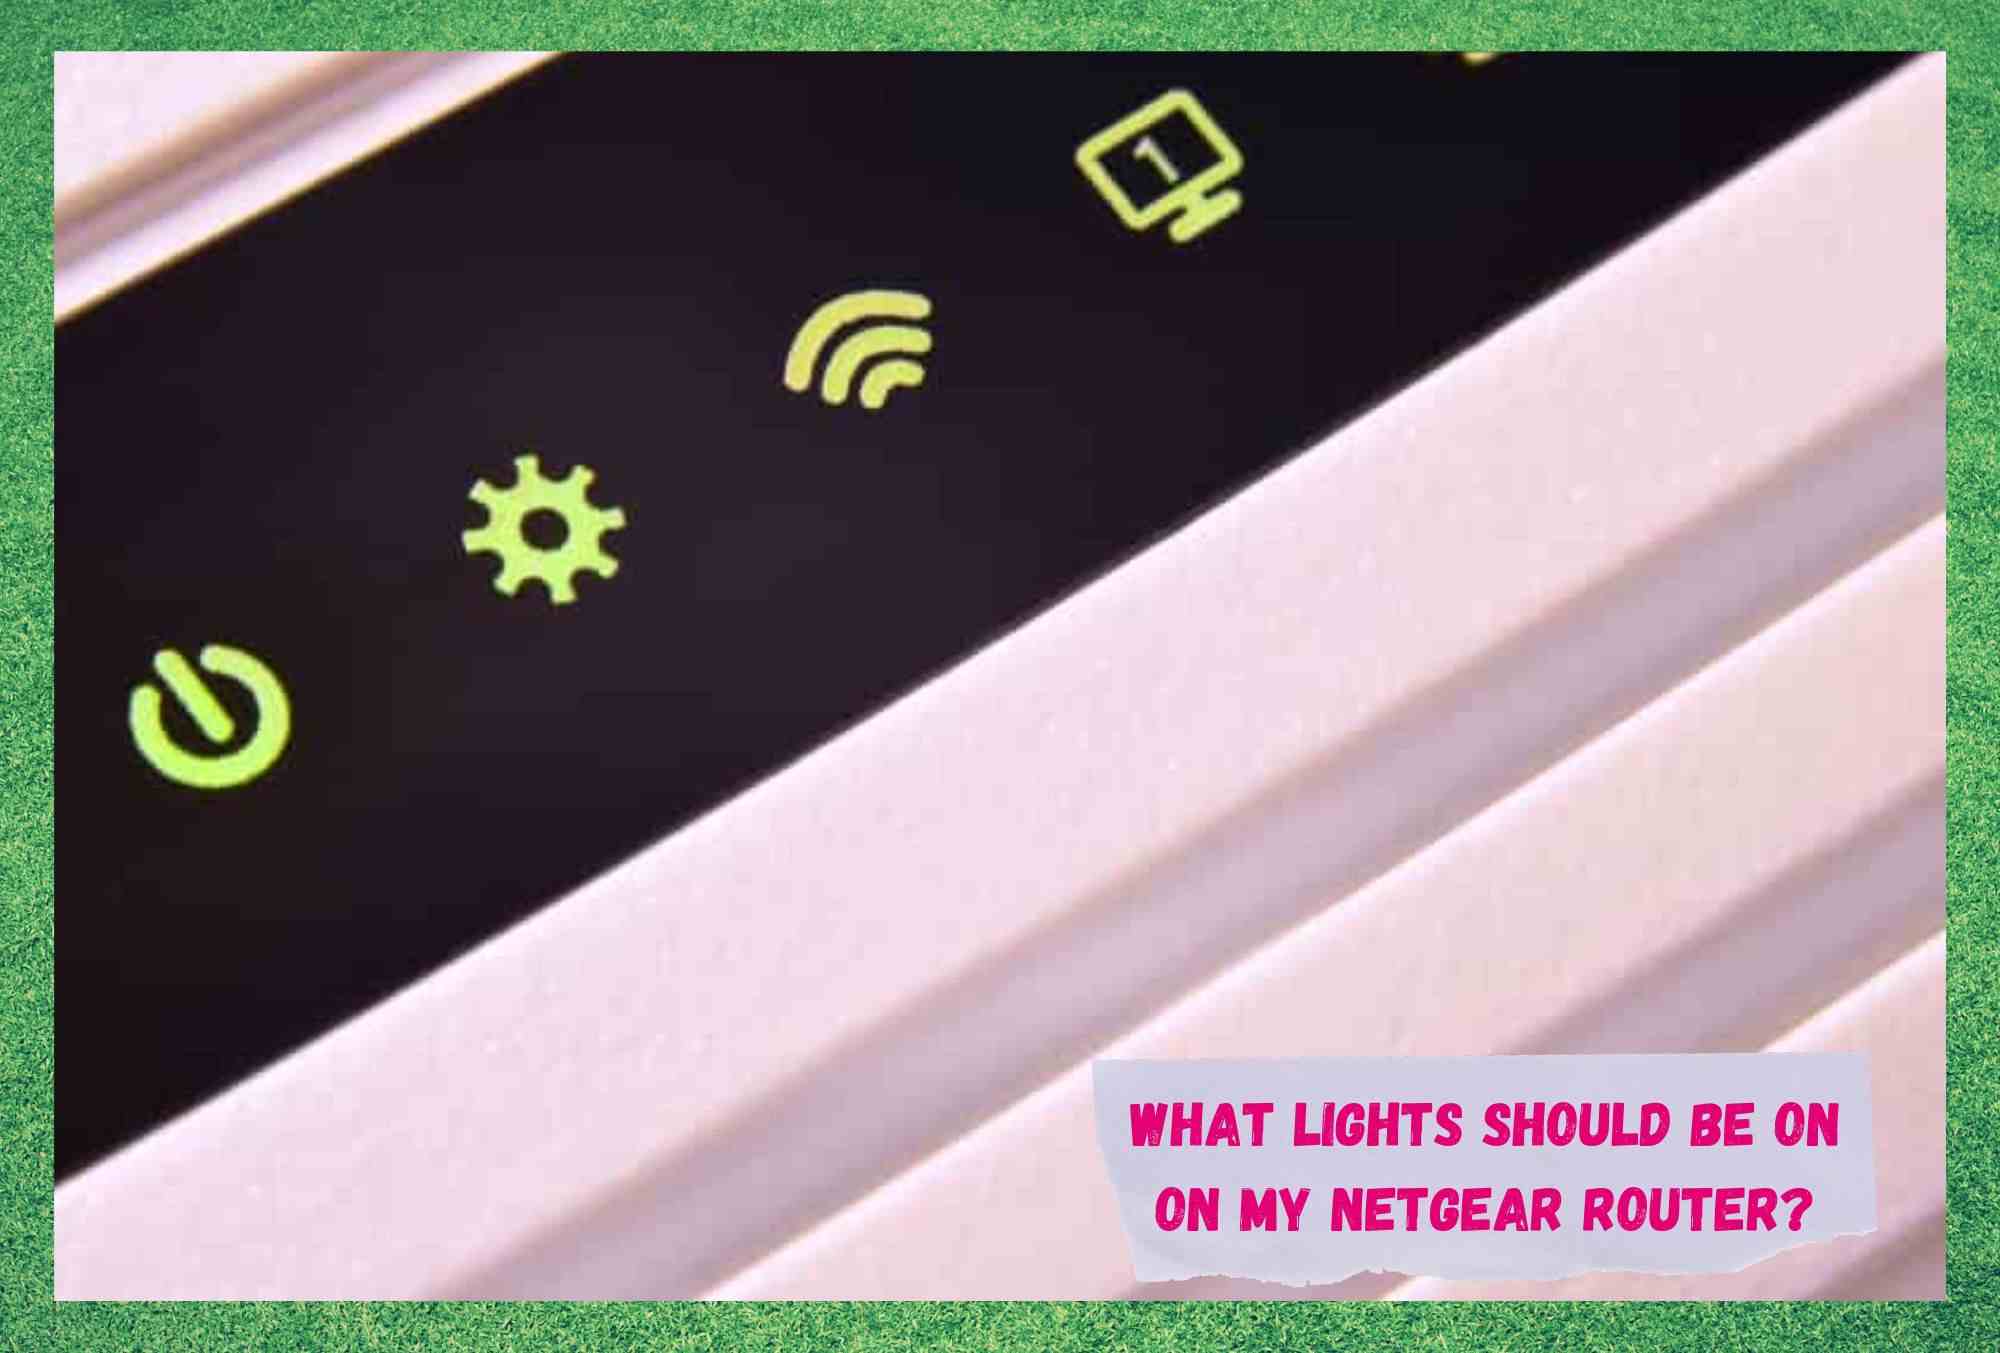 Milyen lámpák legyenek a Netgear Routeremen? (Válaszolt)